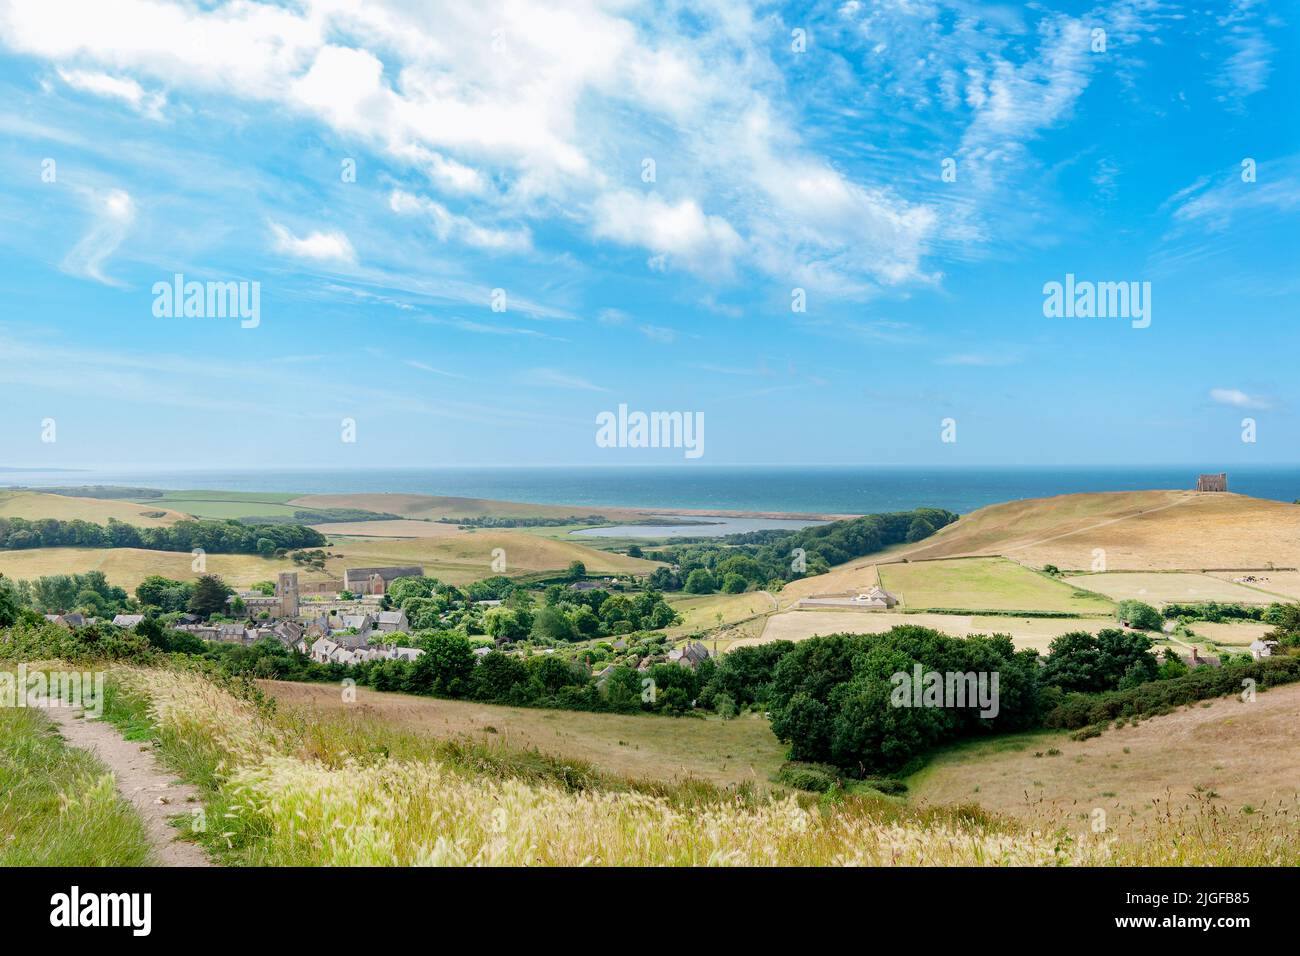 Abbotsbury, Dorset. Vue panoramique sur la campagne, le littoral jurassique et le chenal anglais, y compris le village d'Abbotsbury Banque D'Images